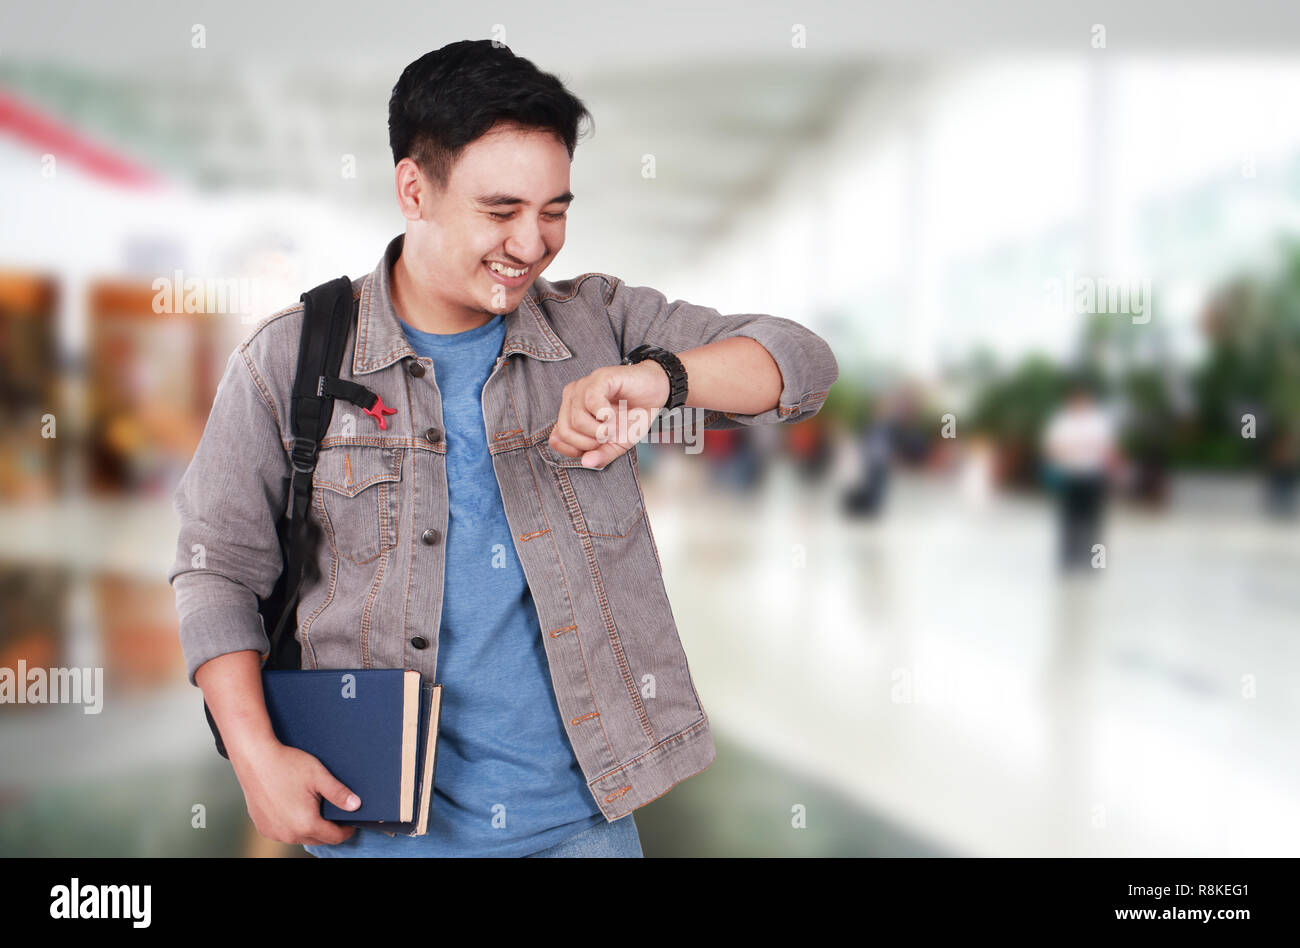 El concepto de tiempo, la imagen de foto retrato de un joven asiático lindo exitoso estudiante varón sonriendo y mirando su reloj de pulsera, de cerca de medio cuerpo vertical Foto de stock